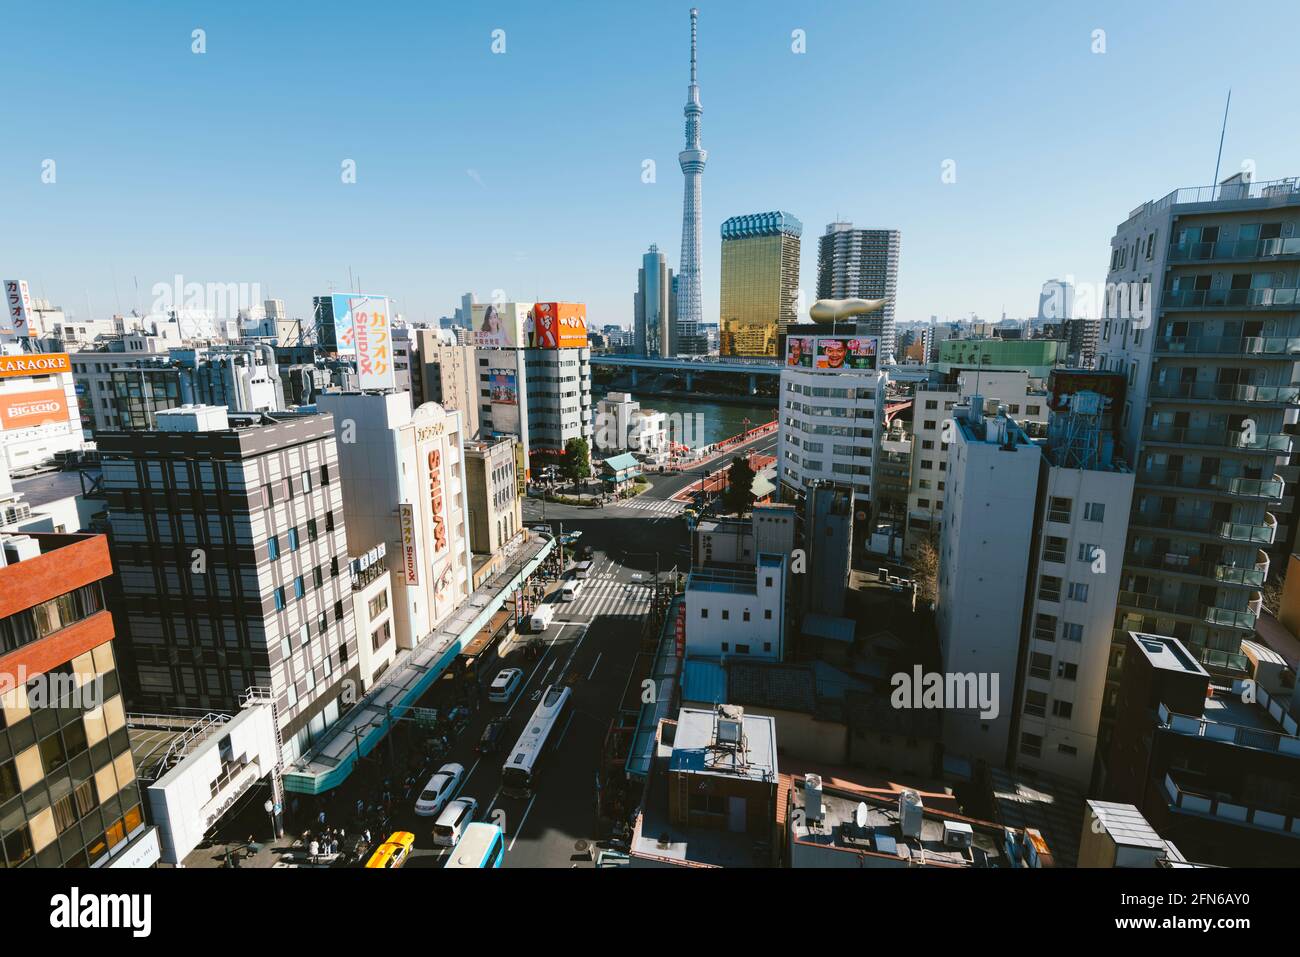 Tokyo, Japon - 10 janvier 2016 : vue d'Eyriel sur le quartier d'Asakusa à Tokyo. Skytree, Kaminarimon, Centre d'information touristique sur la culture Asakusa, Asahi Bee Banque D'Images